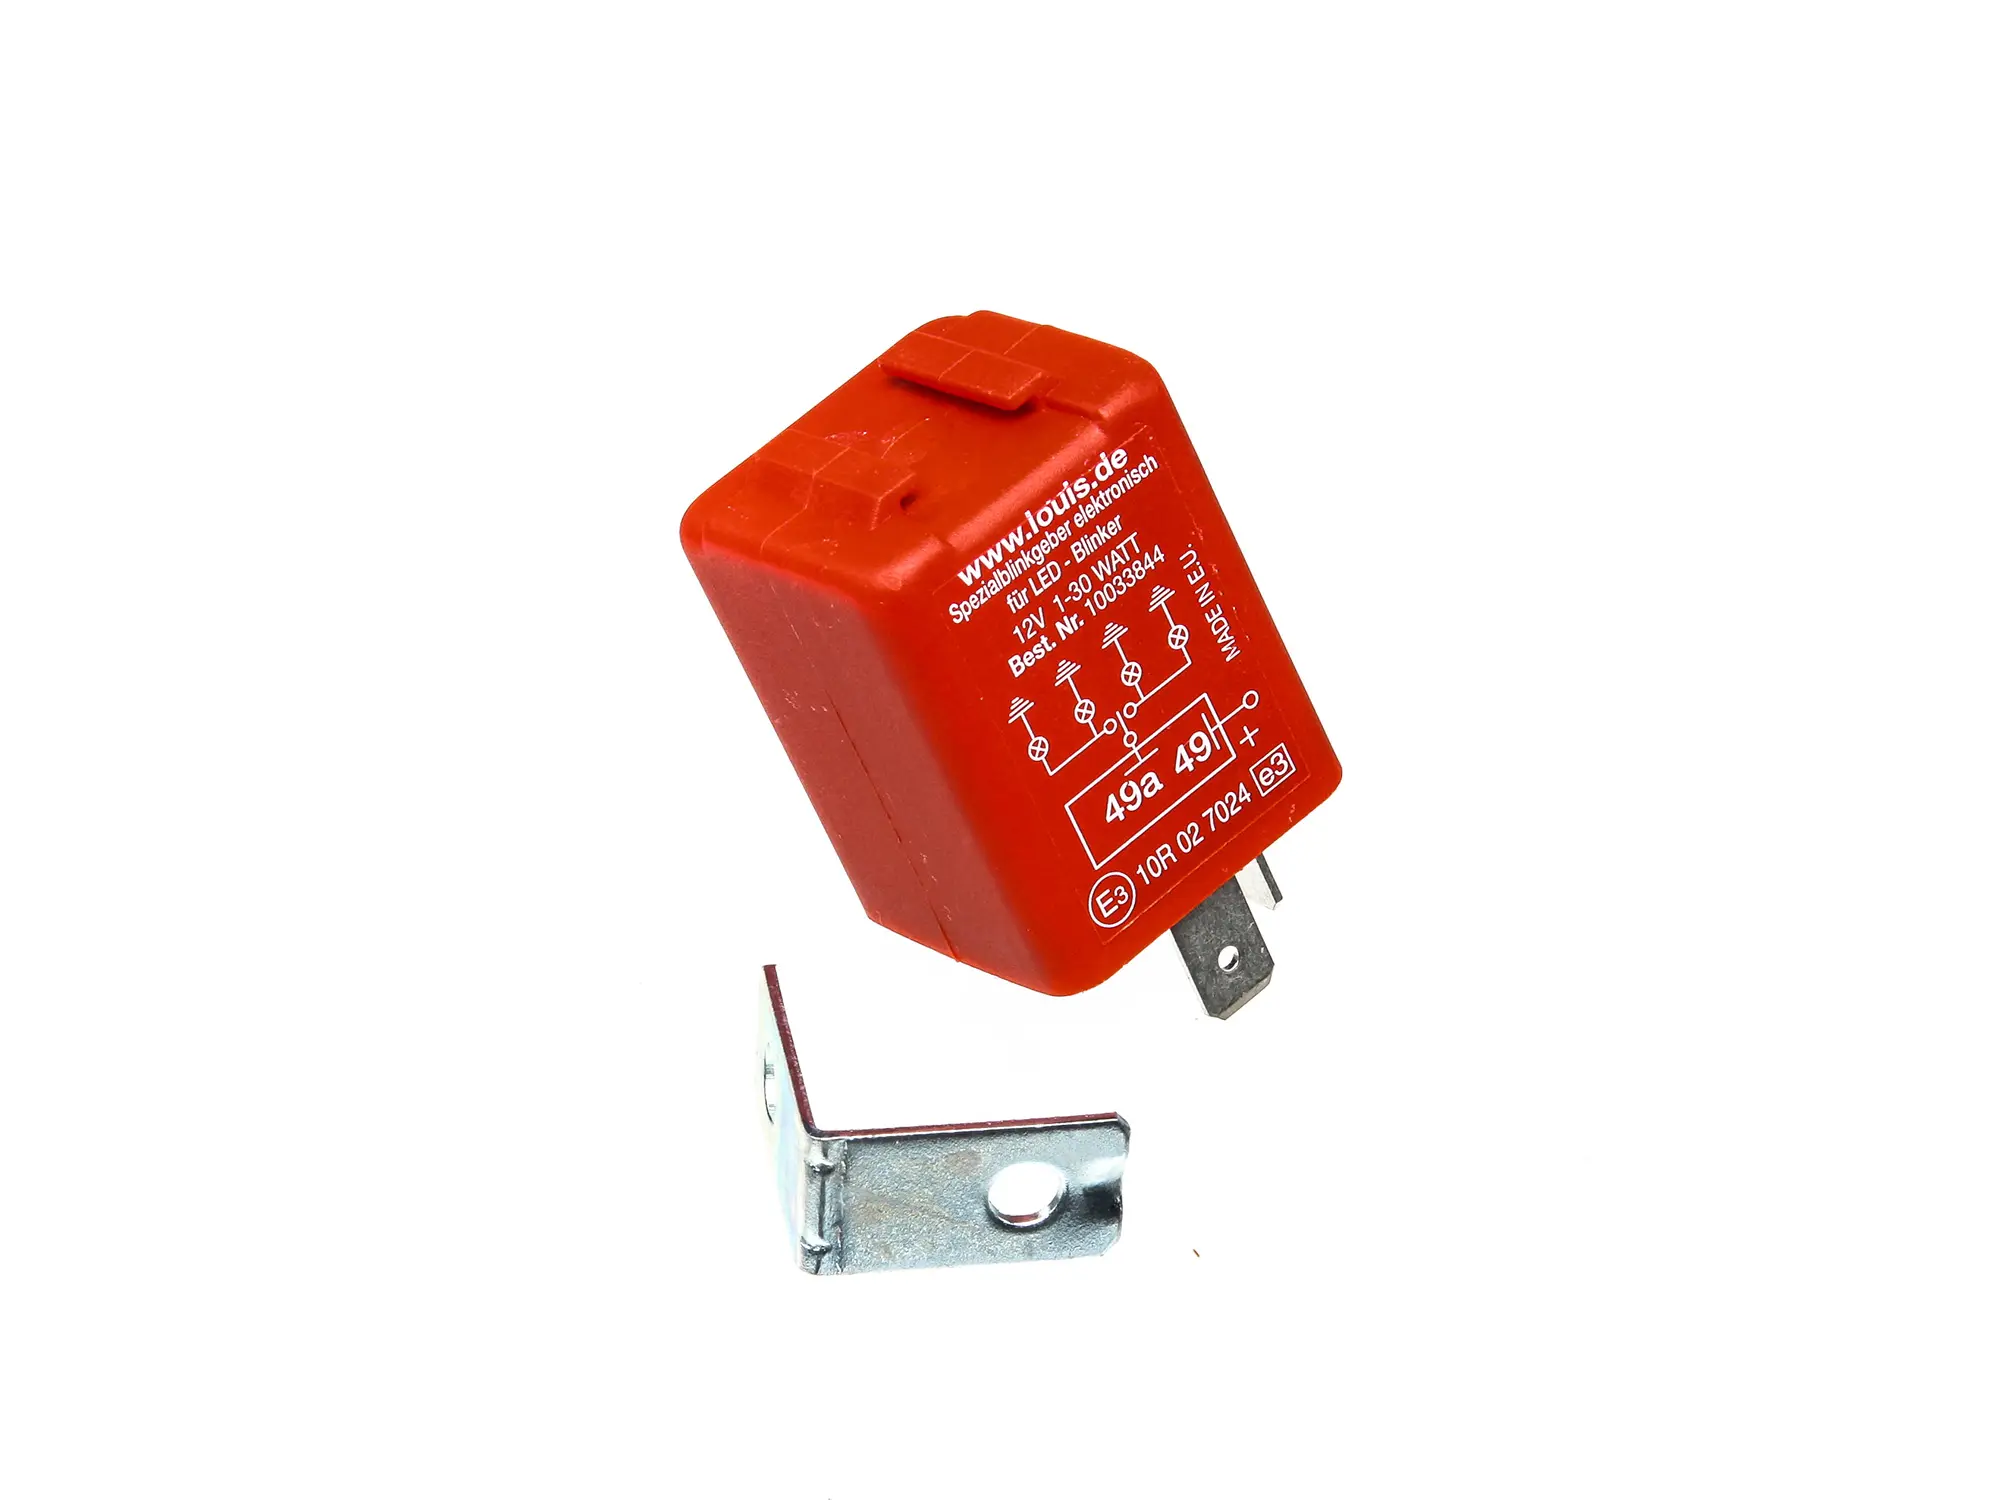 Spezial-Blinkgeber für LED-Blinker, Leistung 1 - 30 W, Art.-Nr.: 10013220 - Bild 1